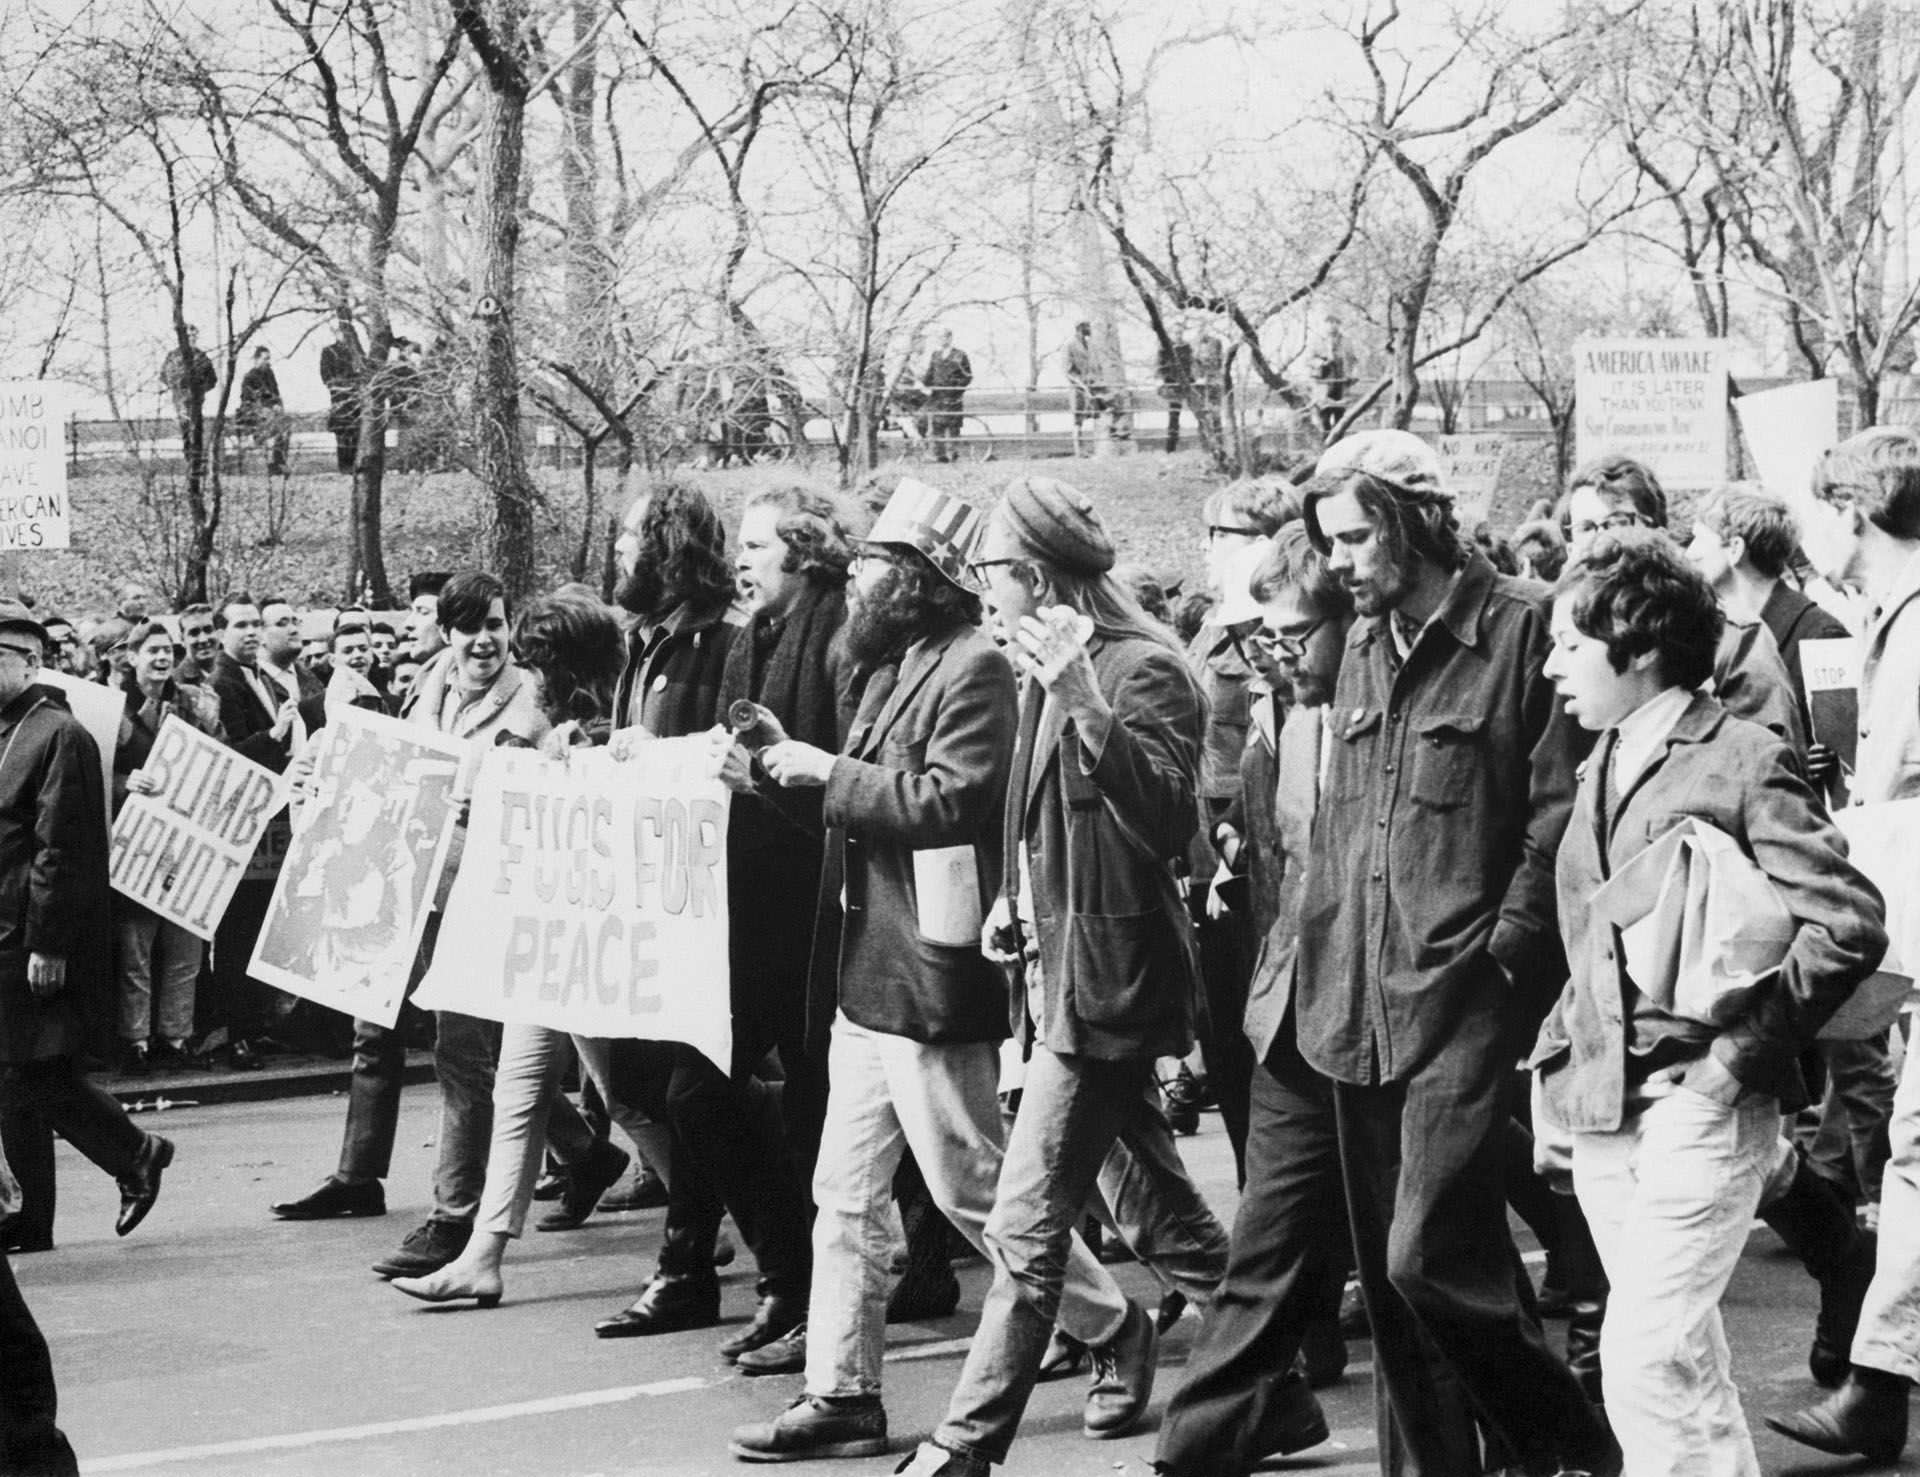 Марш против войны во Вьетнаме в Нью-Йорке. Аллен Гинзберг в звездно-полосатой шляпе идет в первом ряду с музыкальной группой «Беглецы», слева от него – поэт Питер Орловски